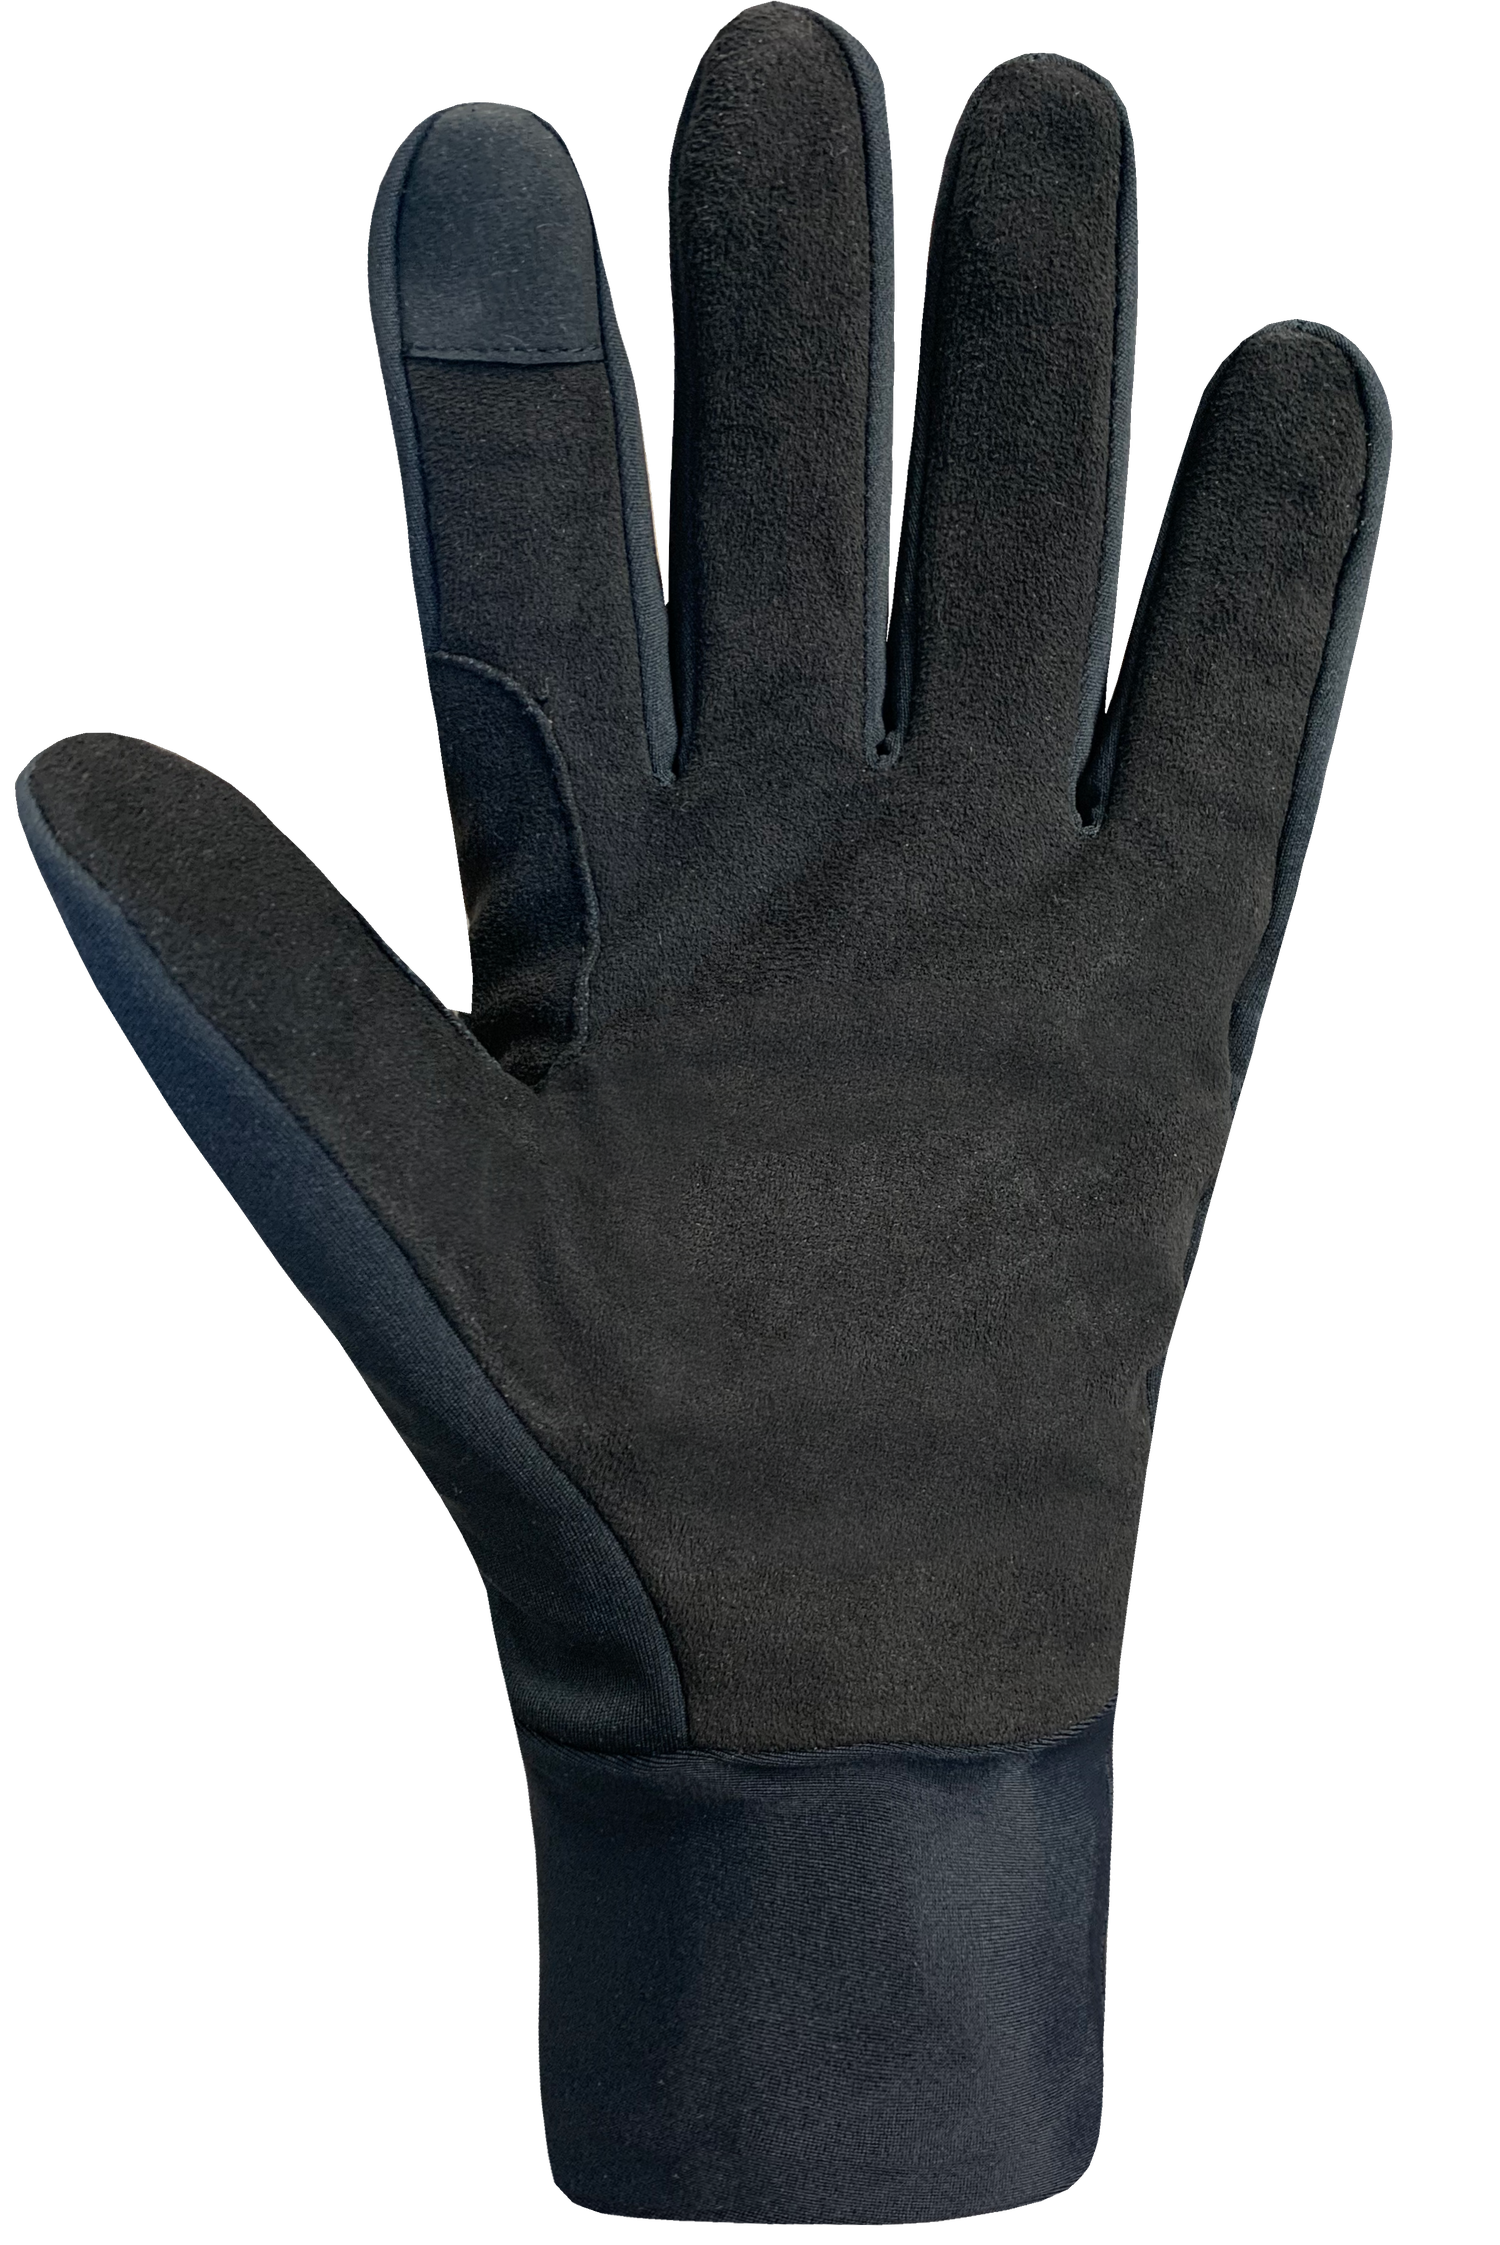 Nordik Windstopper® Gloves - Adult, Black/Silver